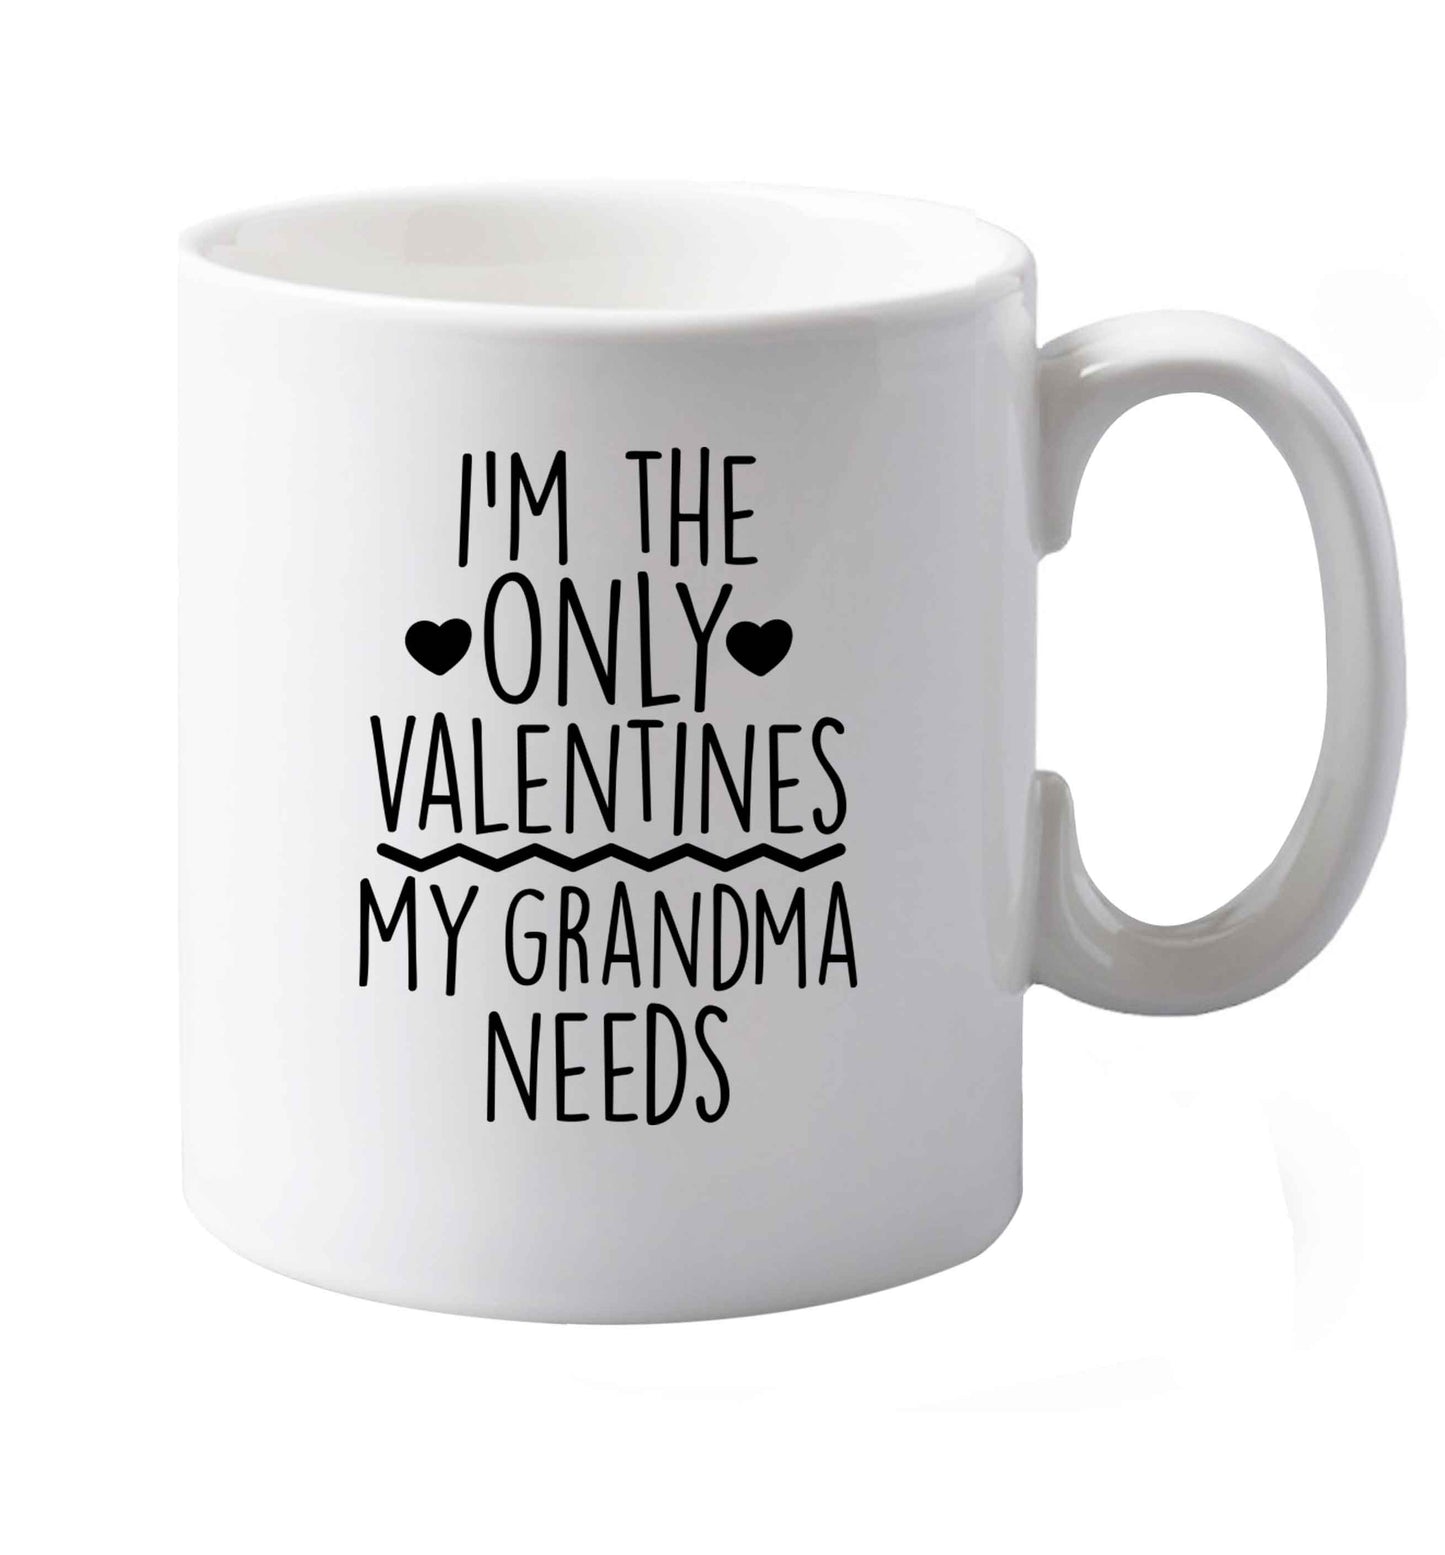 10 oz I'm the only valentines my grandma needs ceramic mug both sides